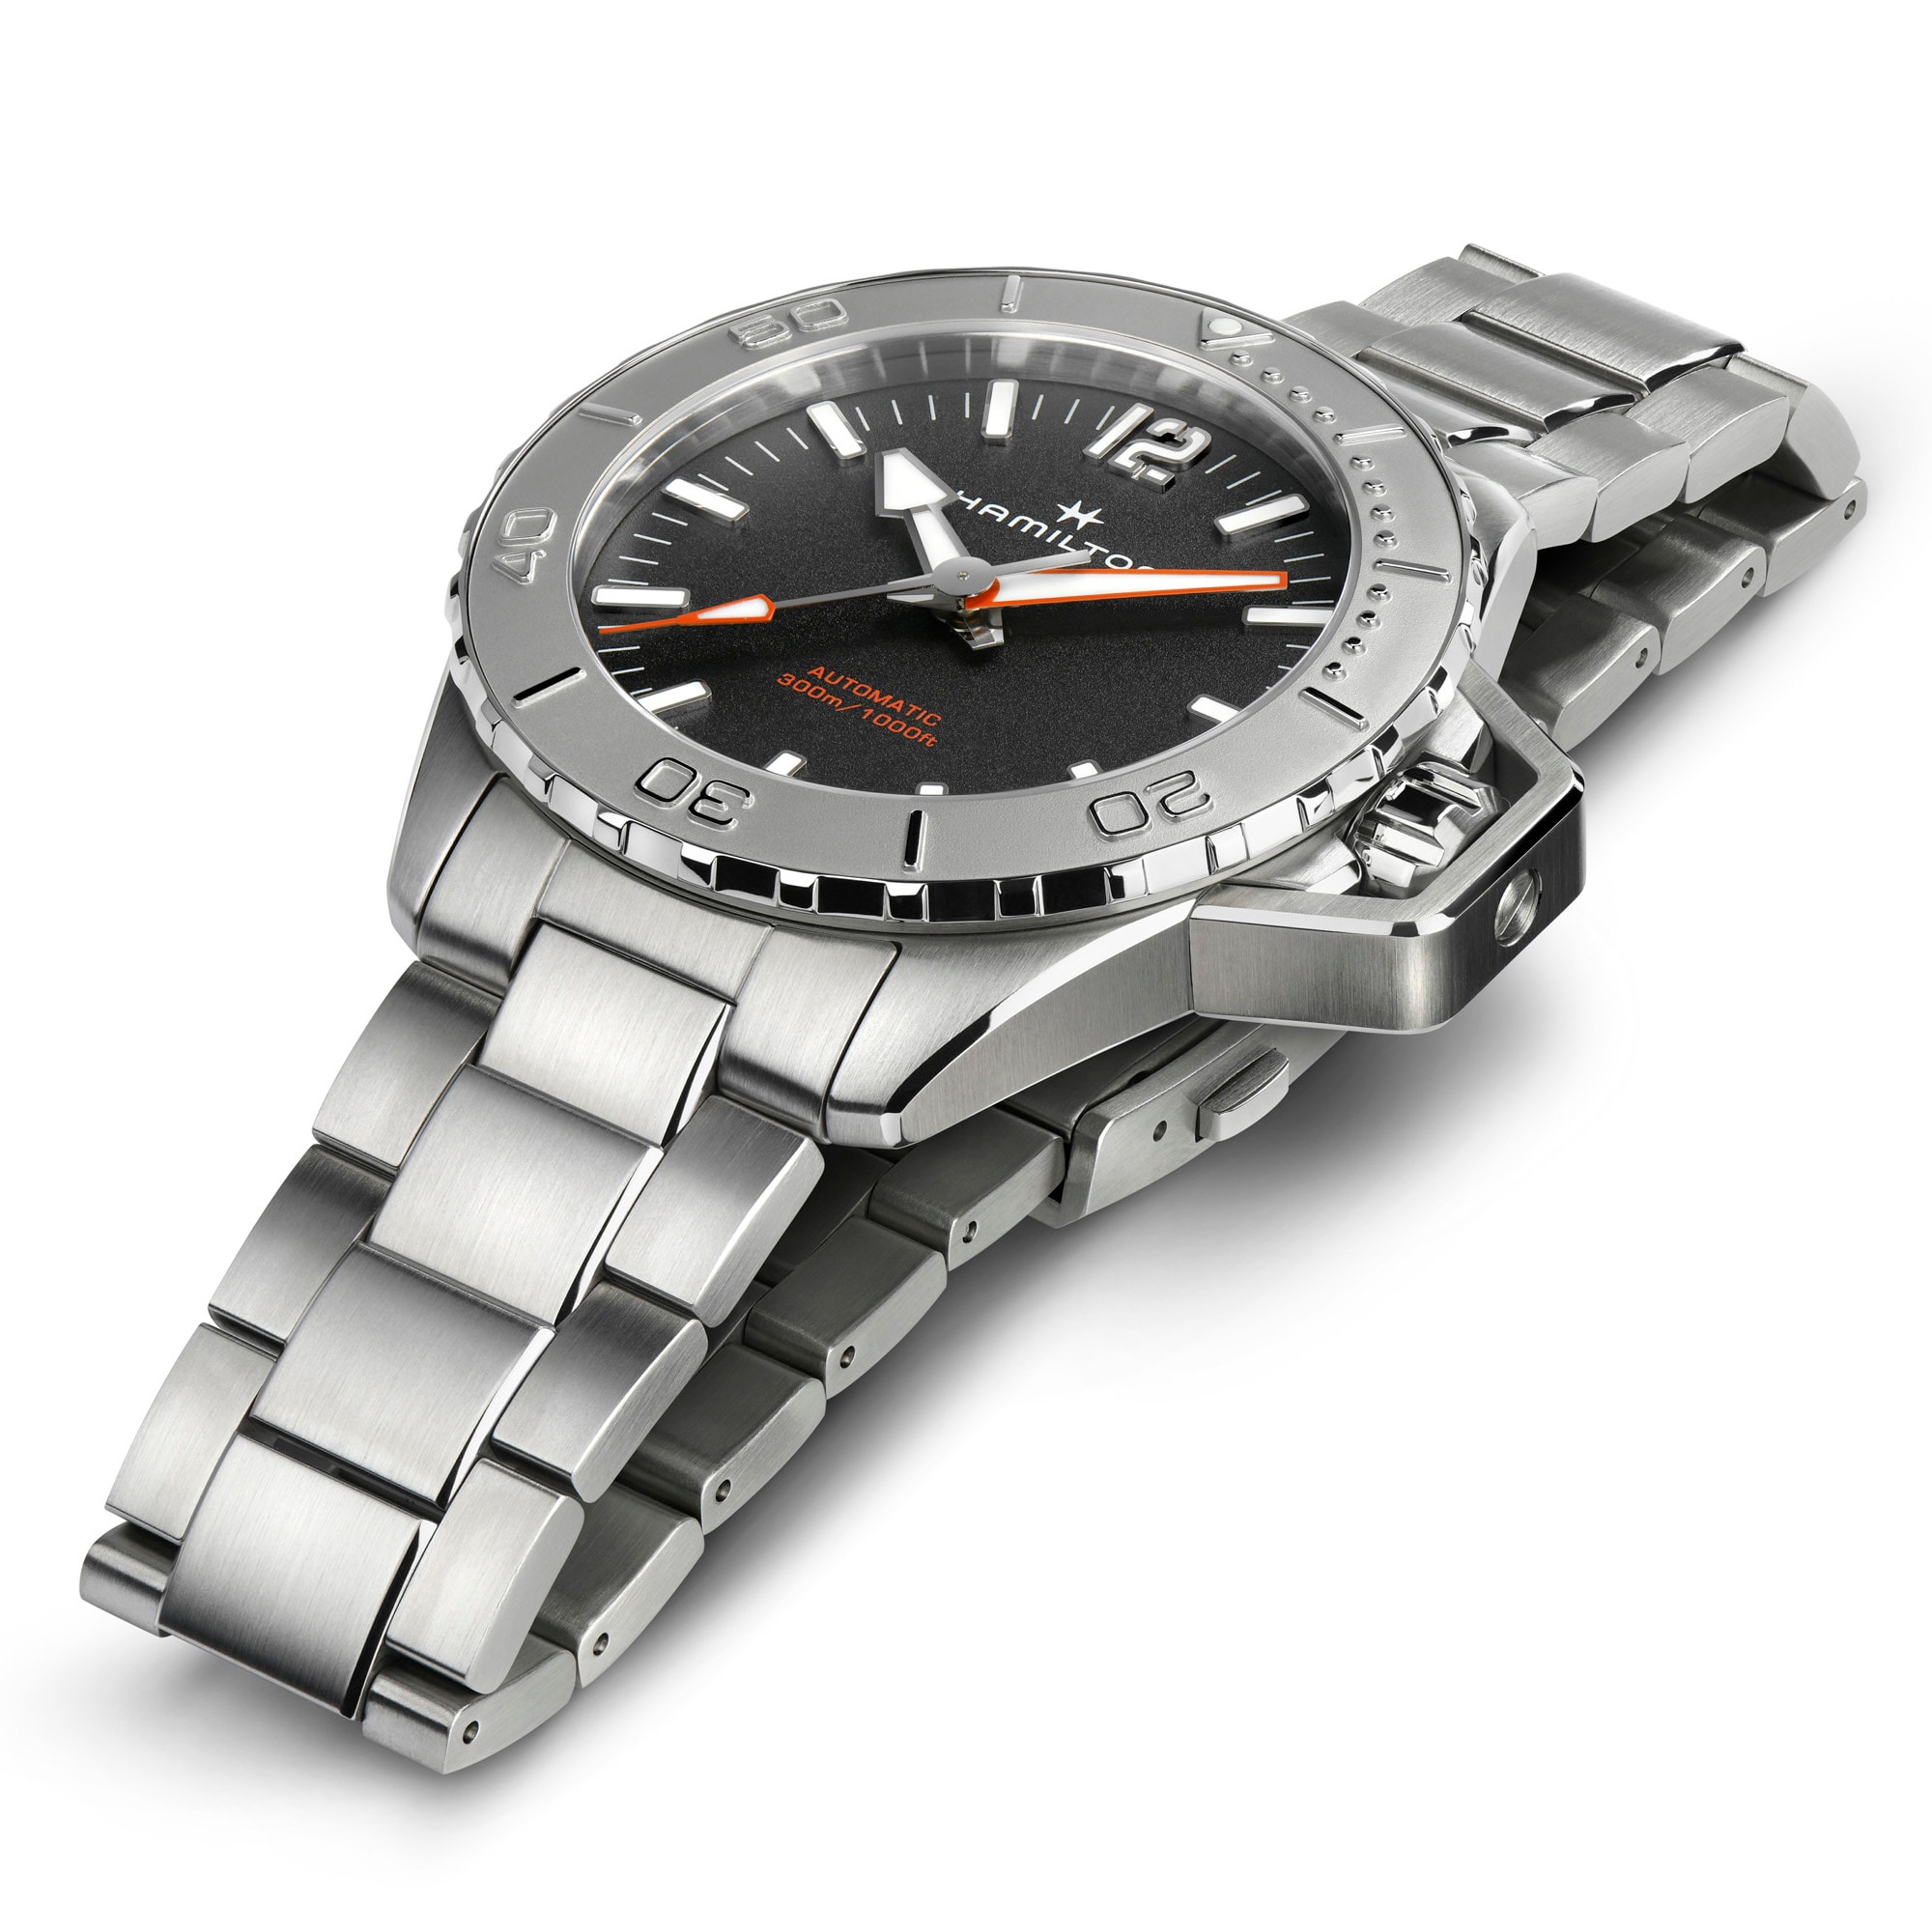 Oepnwater - Black dial - Stainless Steel bracelet - H77815130